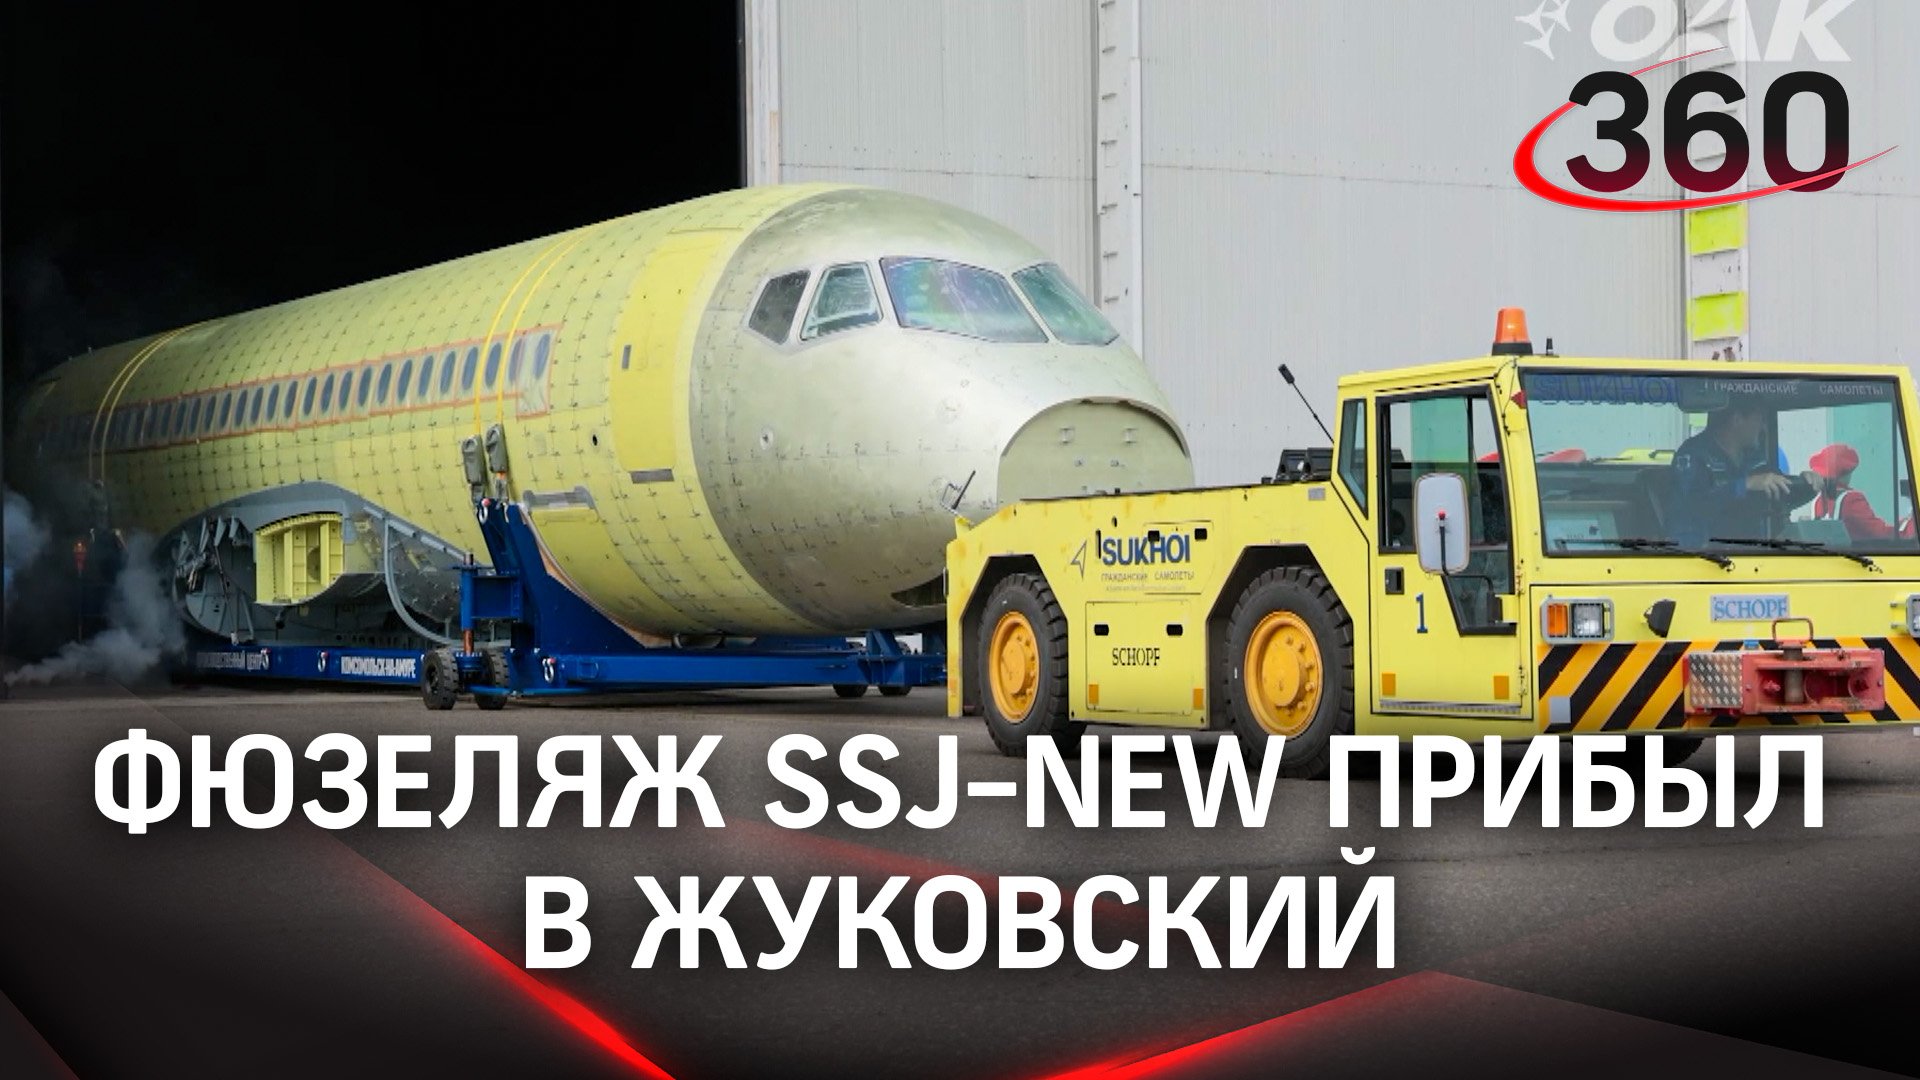 В Подмосковье доставили фюзеляж нового отечественного лайнера - SSJ-NEW